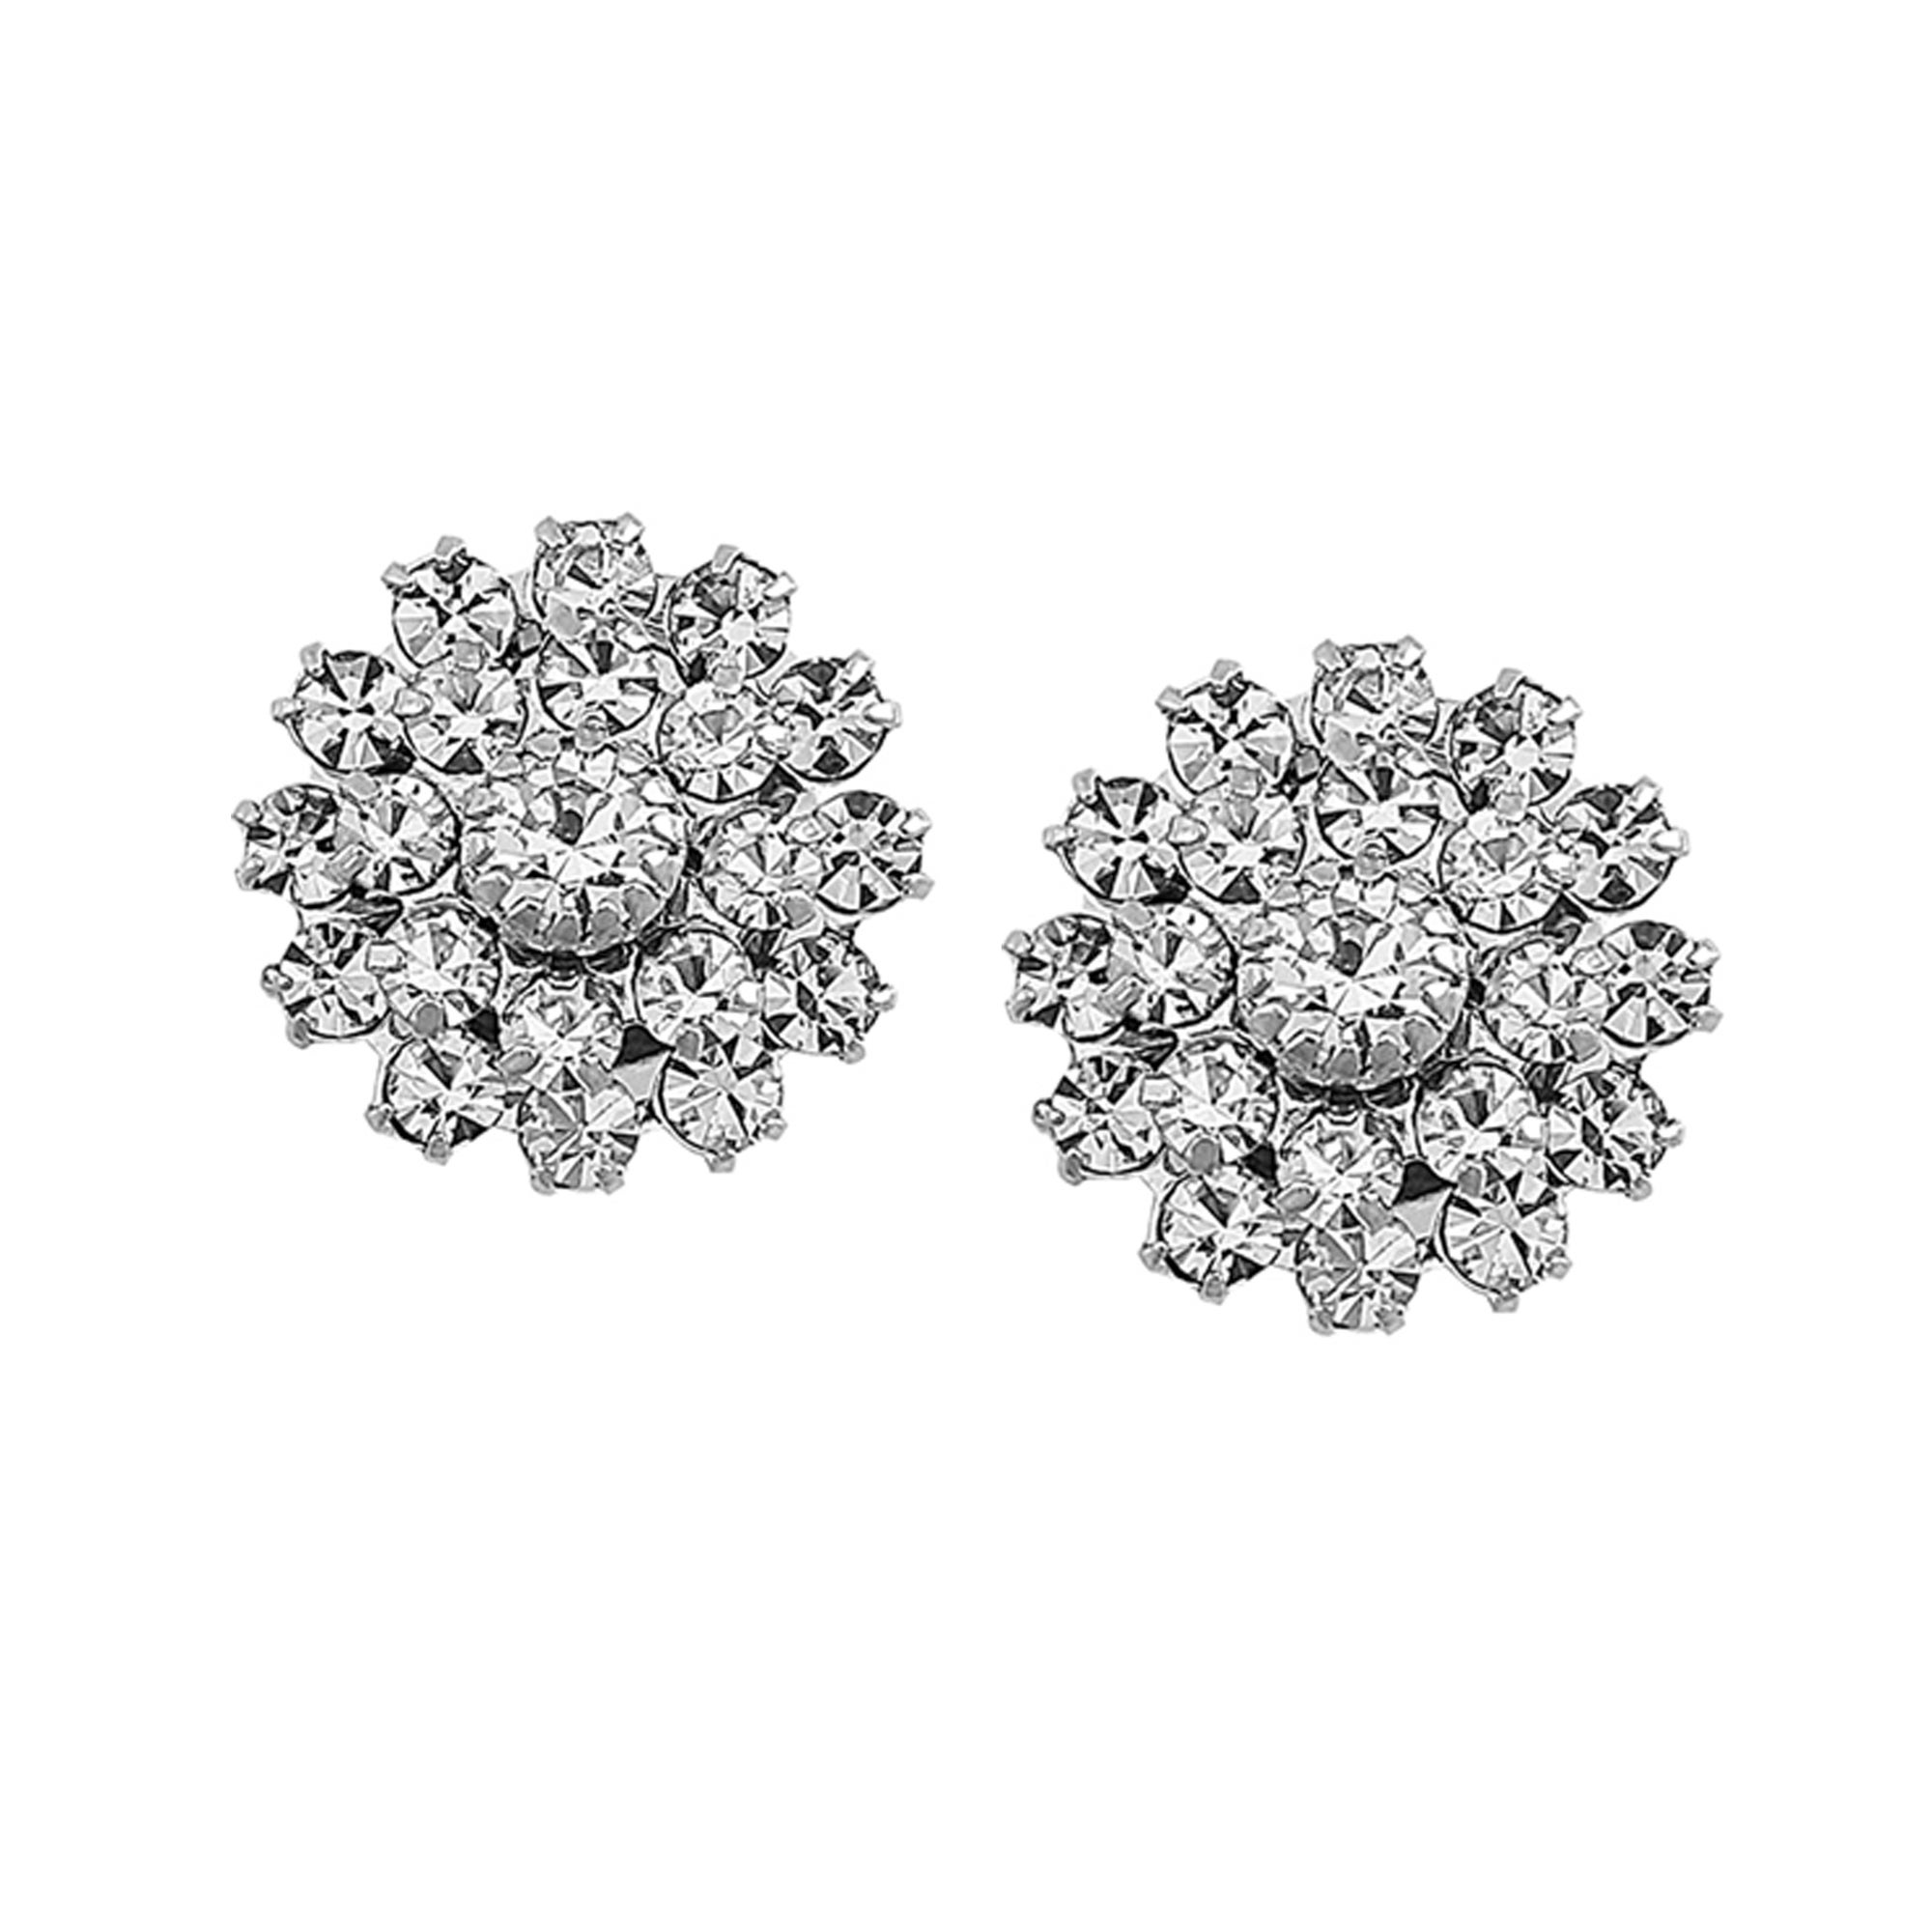 Coco Earrings - Silver - Ellen Hunter NYC - Luxury Bridal Jewelry